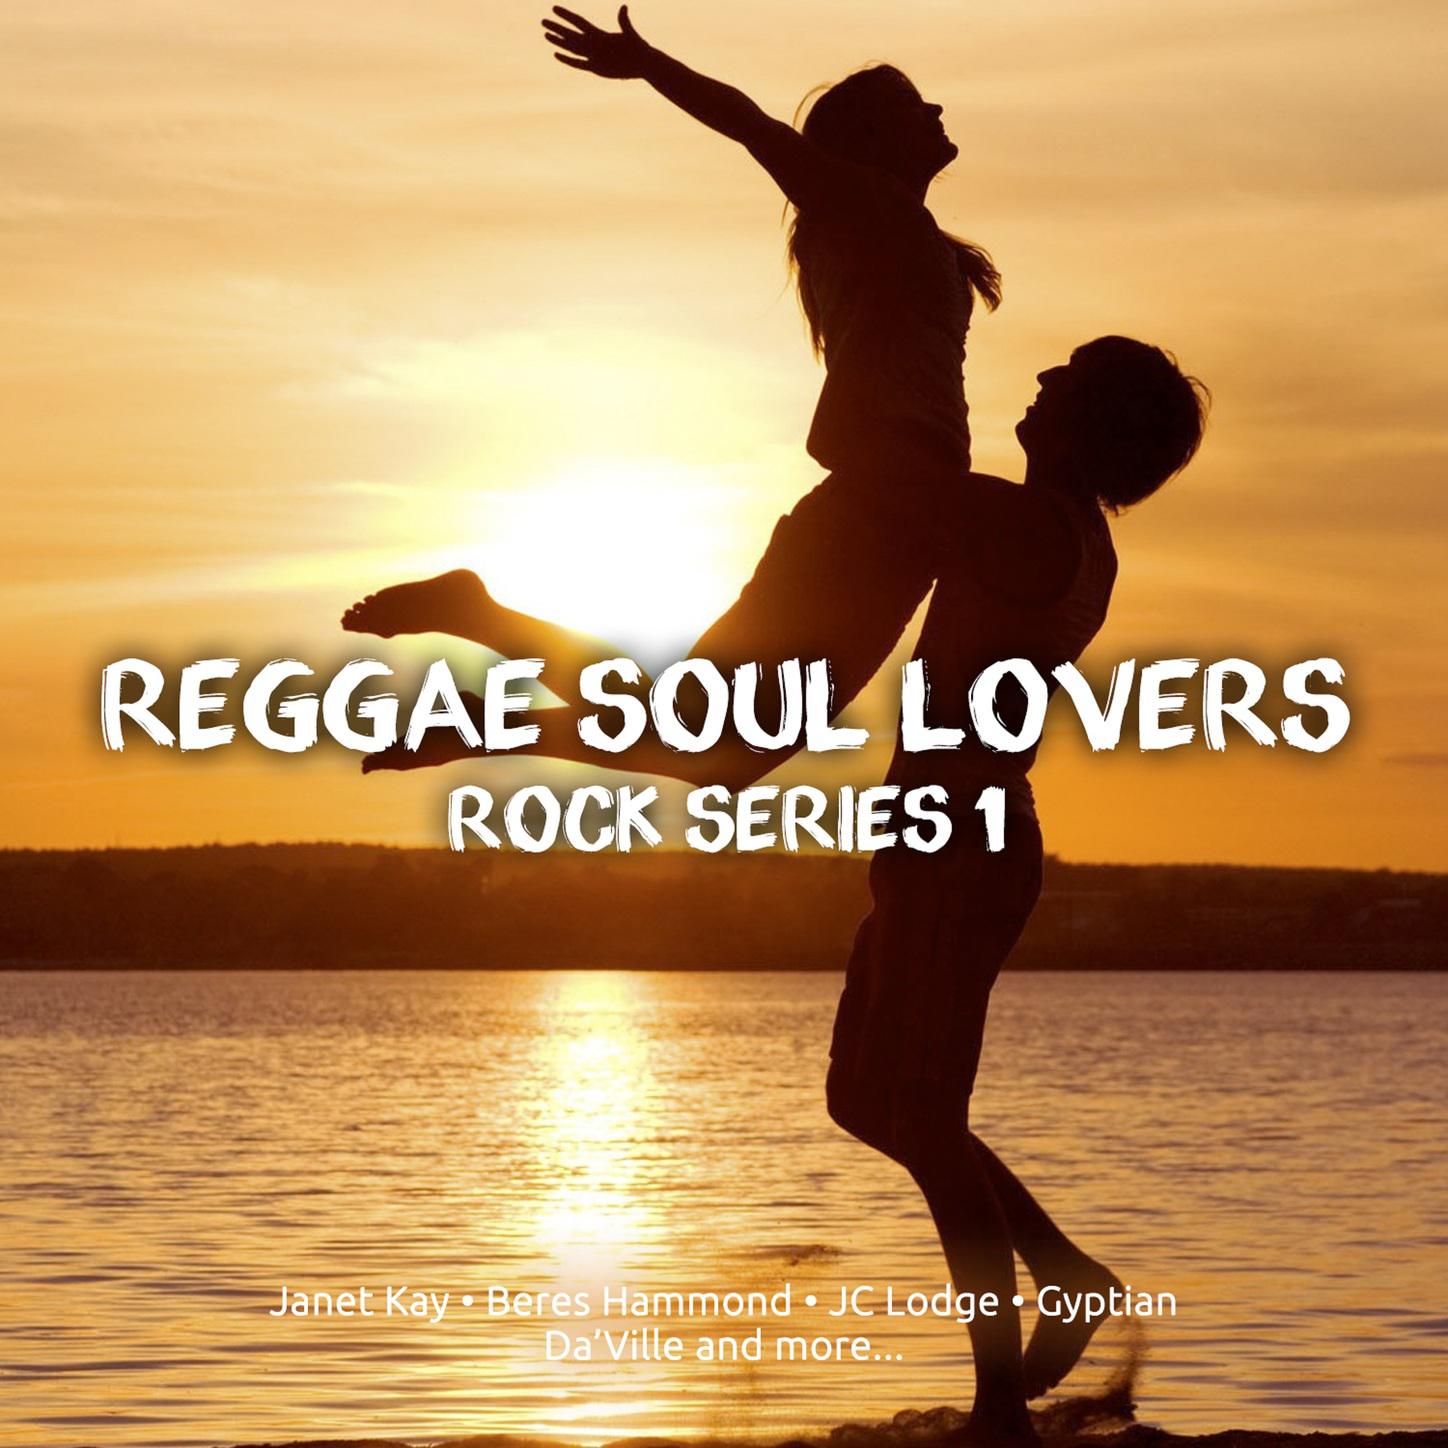 Reggae Soul Lovers Rock Series 1